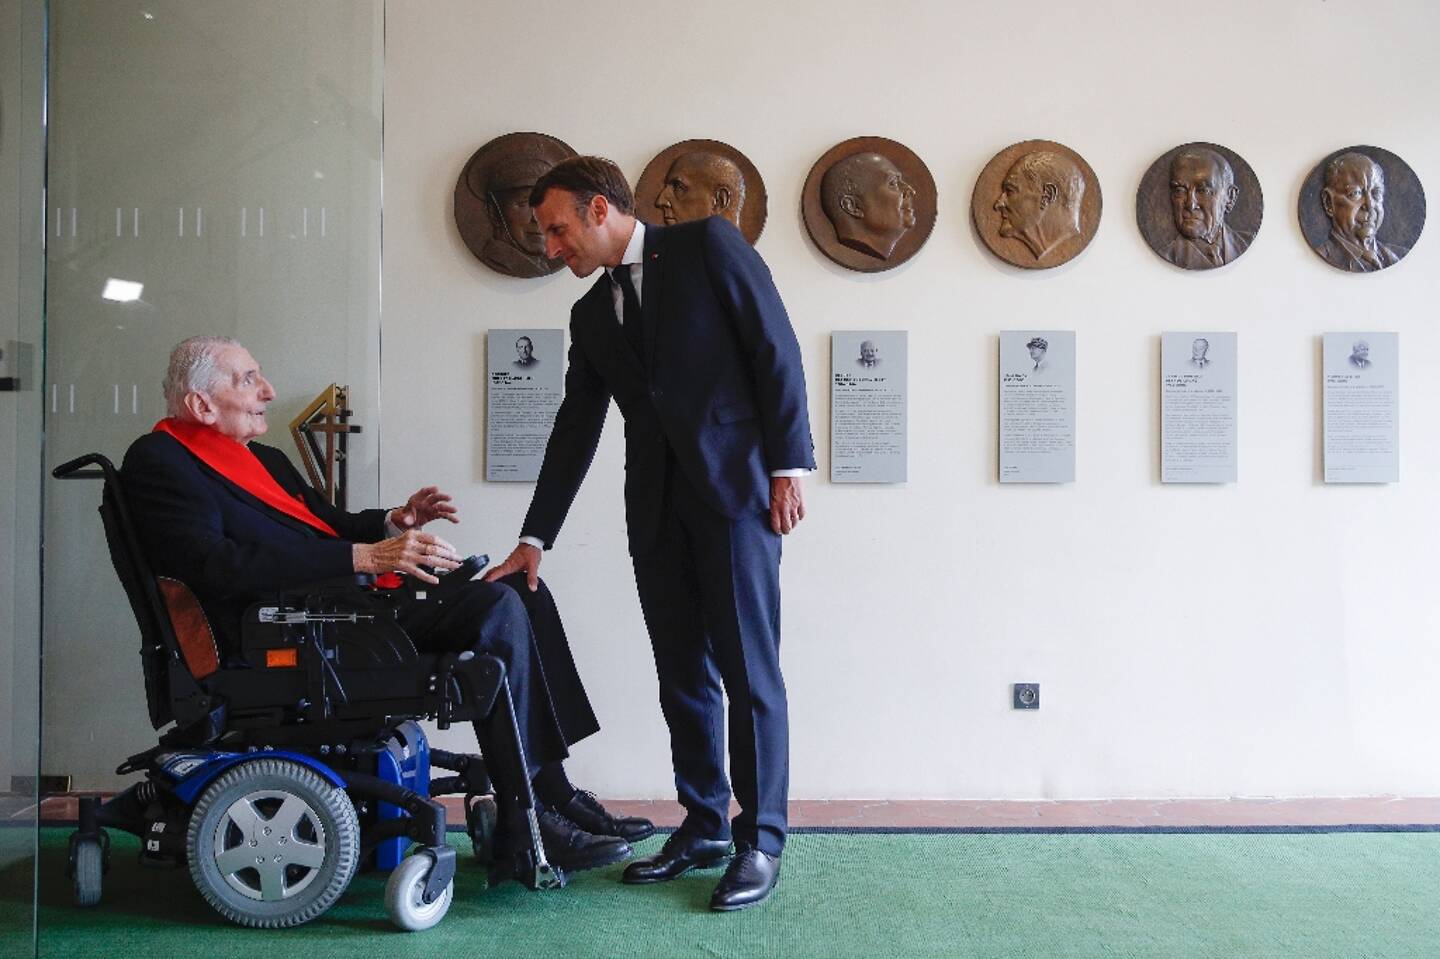 Hubert Germain, Compagnon de la Libération, et le président Emmanuel Macron lors d'une visite au Musée de l'Ordre de la Libération, le 18 juin 2020 à Suresnes, près de Paris